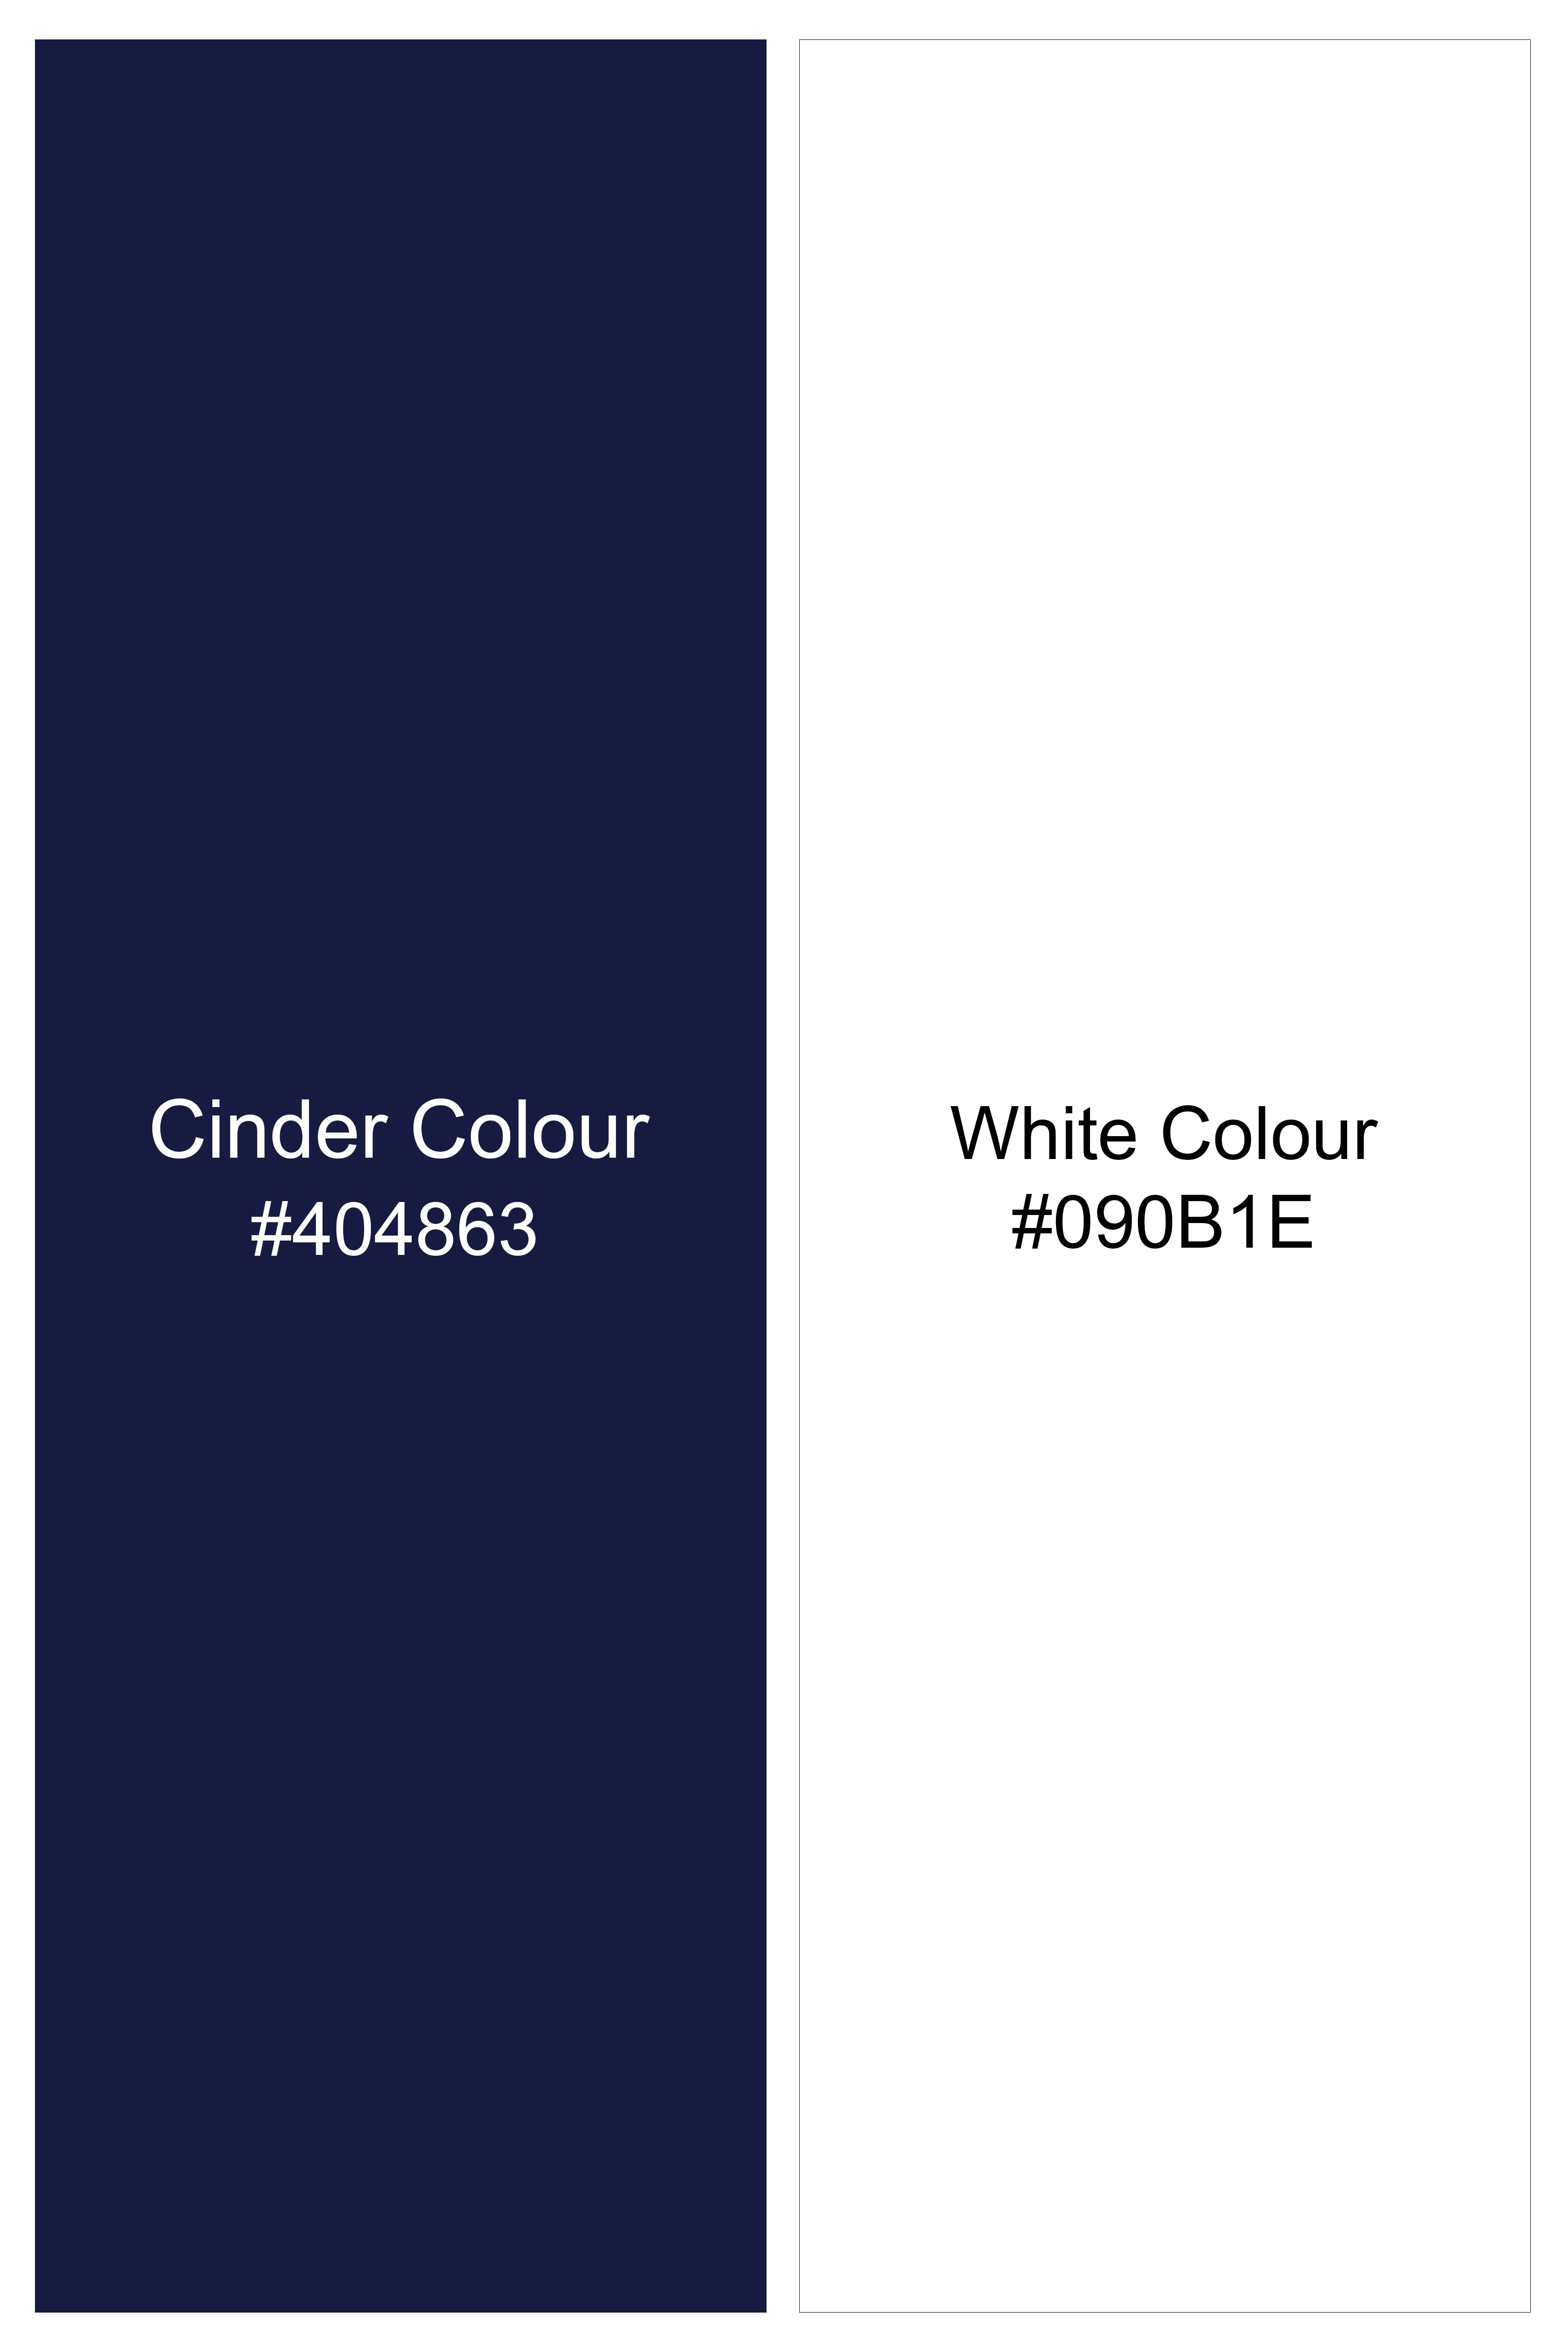 Cinder Blue and White Striped Wool Rich Blazer BL3096-SB-36, BL3096-SB-38, BL3096-SB-40, BL3096-SB-42, BL3096-SB-44, BL3096-SB-46, BL3096-SB-48, BL3096-SB-50, BL3096-SB-52, BL3096-SB-54, BL3096-SB-56, BL3096-SB-58, BL3096-SB-60